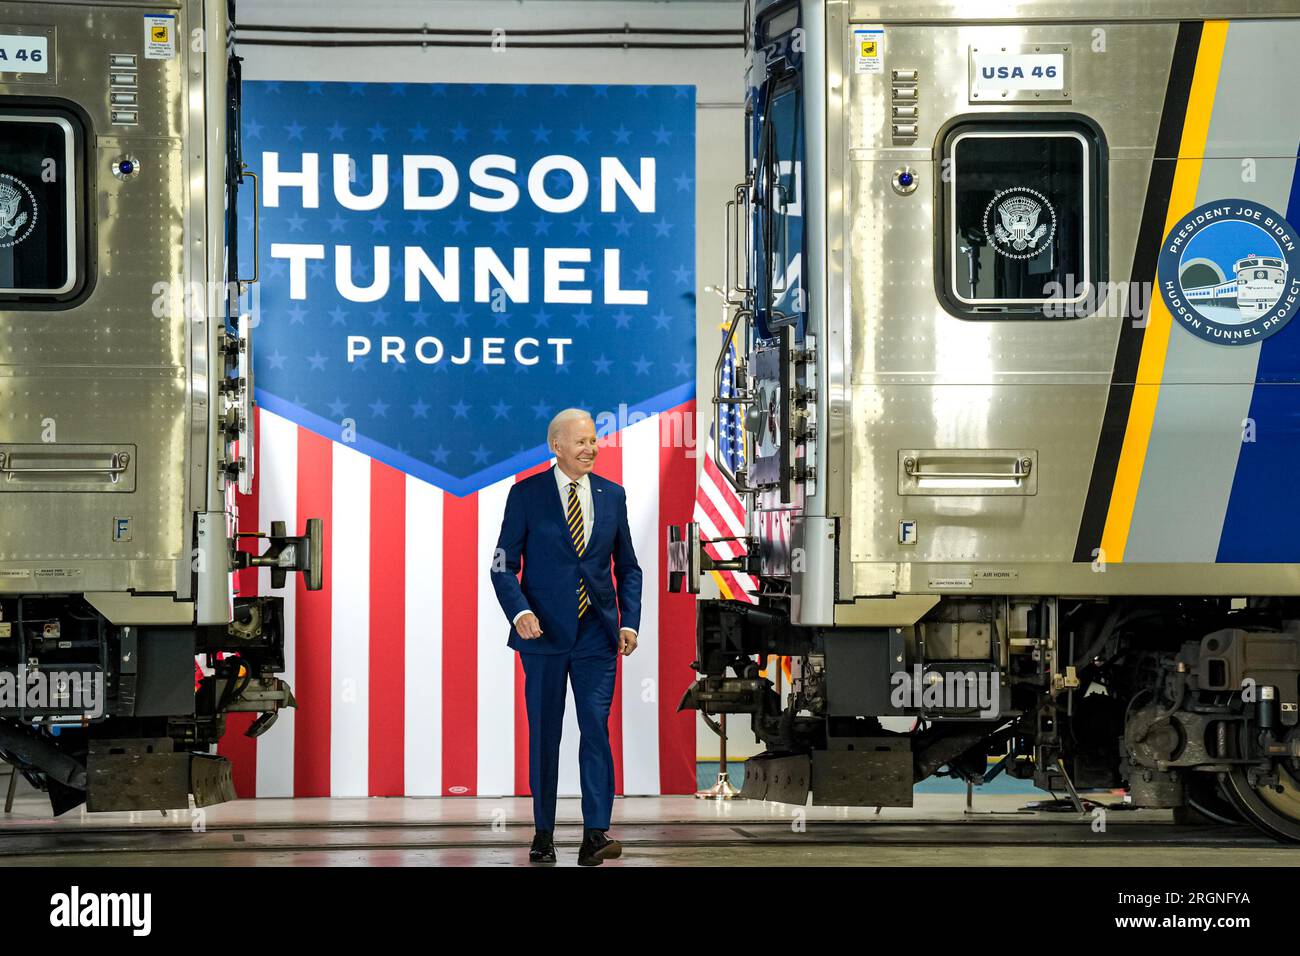 Reportage: Biden visita il West Side Rail Yard a New York (gennaio 2023) - il presidente Joe Biden fa osservazioni sugli investimenti infrastrutturali nel Hudson River Tunnel Project, martedì 31 gennaio 2023, presso il West Side Rail Yard a New York. Foto Stock